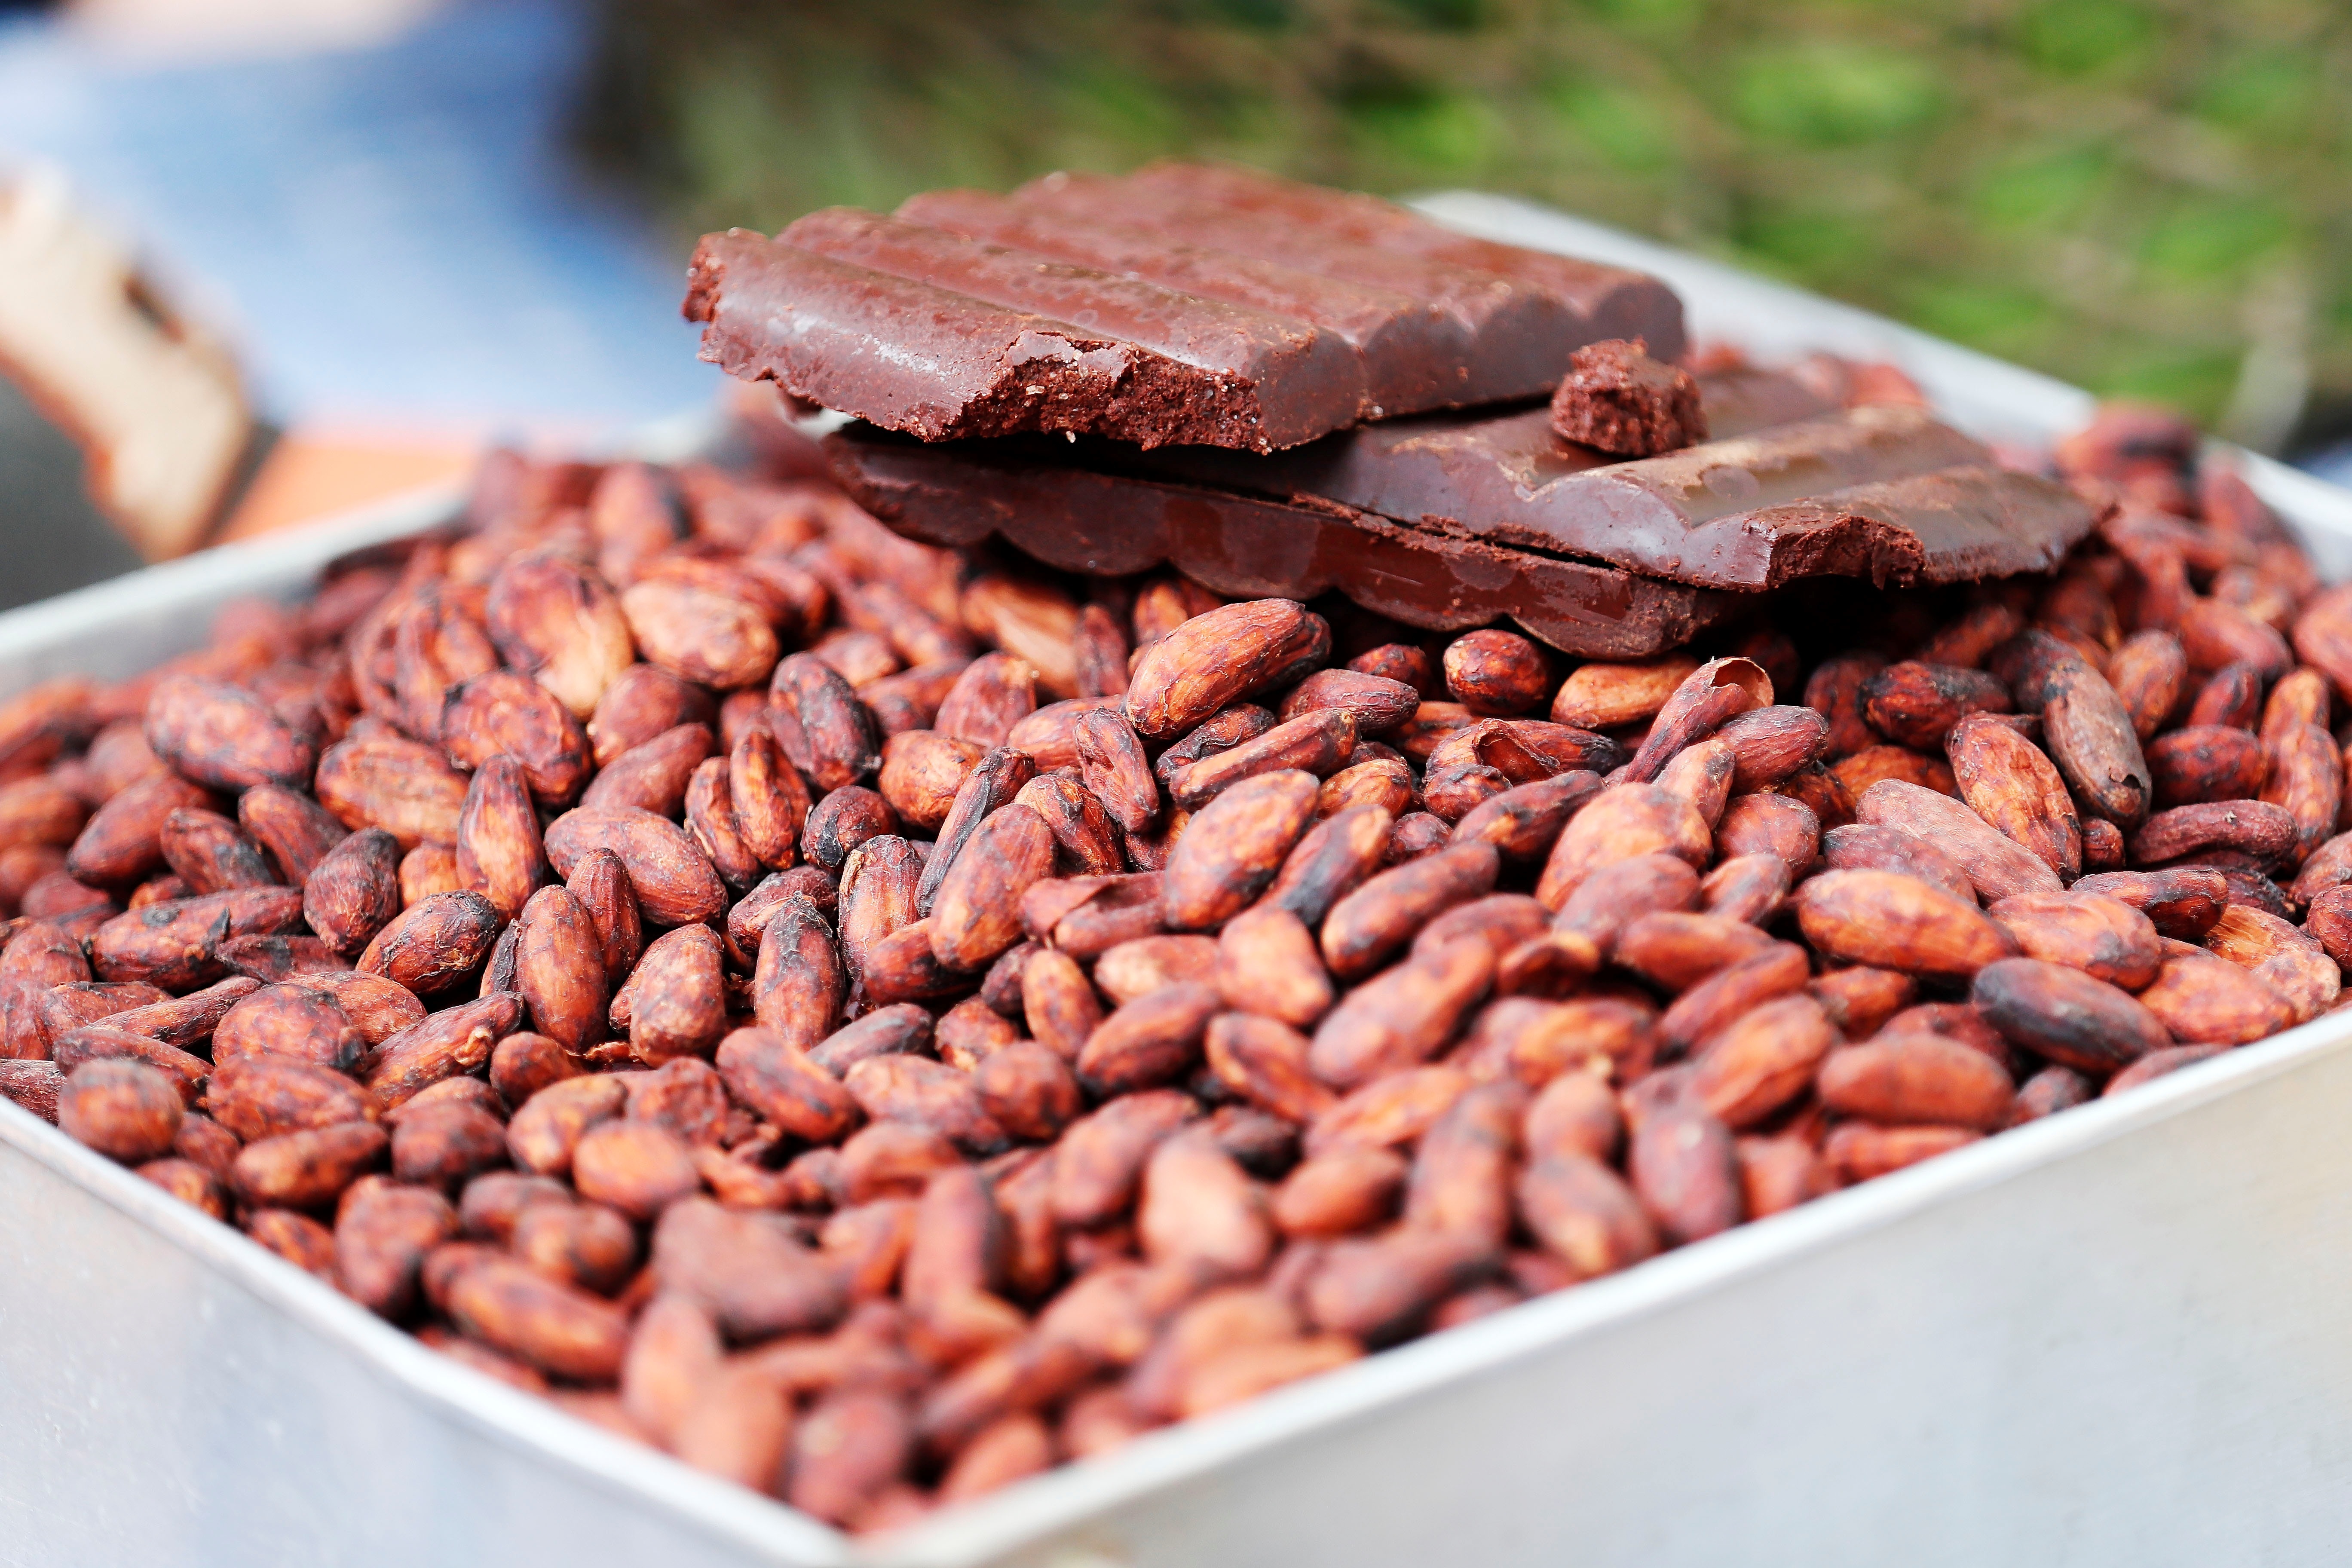 Los expertos aseguran que las versiones naturales y puras del cacao son las mejores para acelerar el metabolismo
EFE/Carlos Ortega/Archivo
